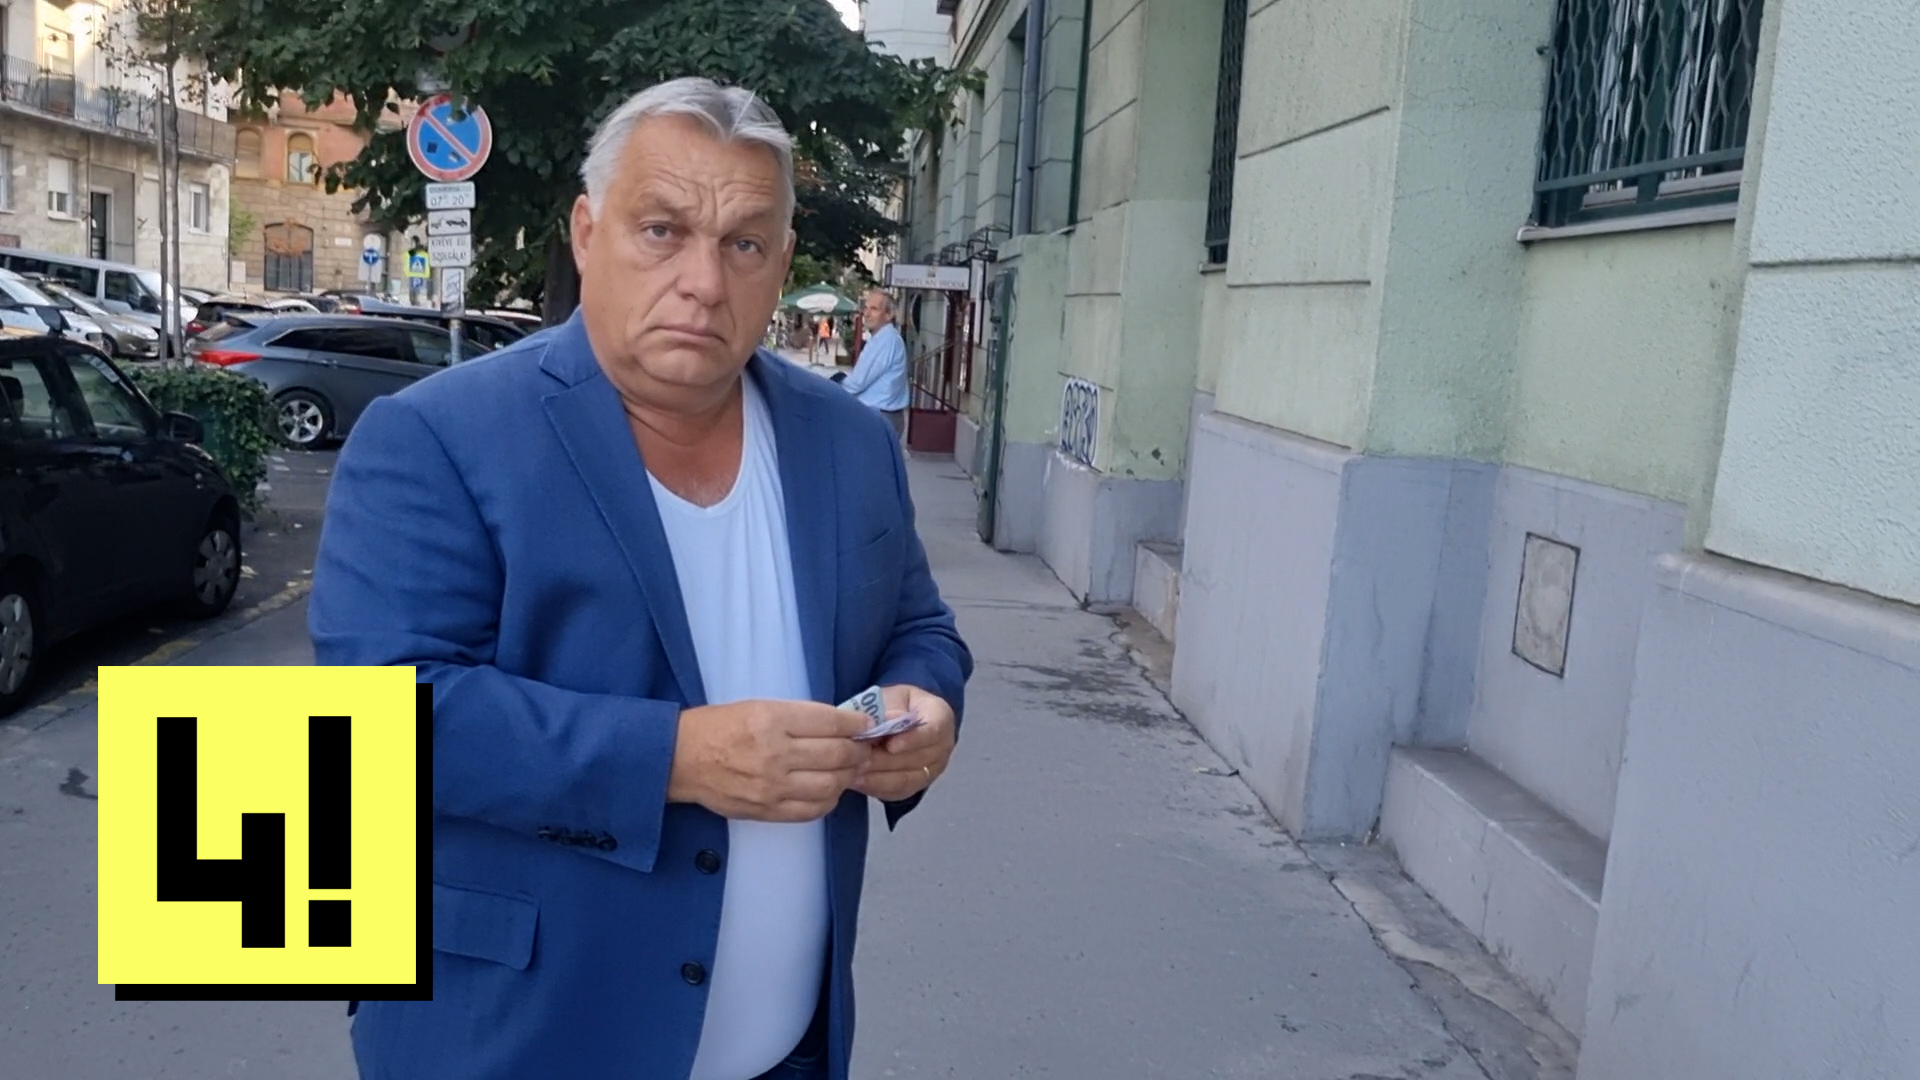 Orbánt kérdeztük Ferencvárosban: Le kell-e mondania Matolcsynak?